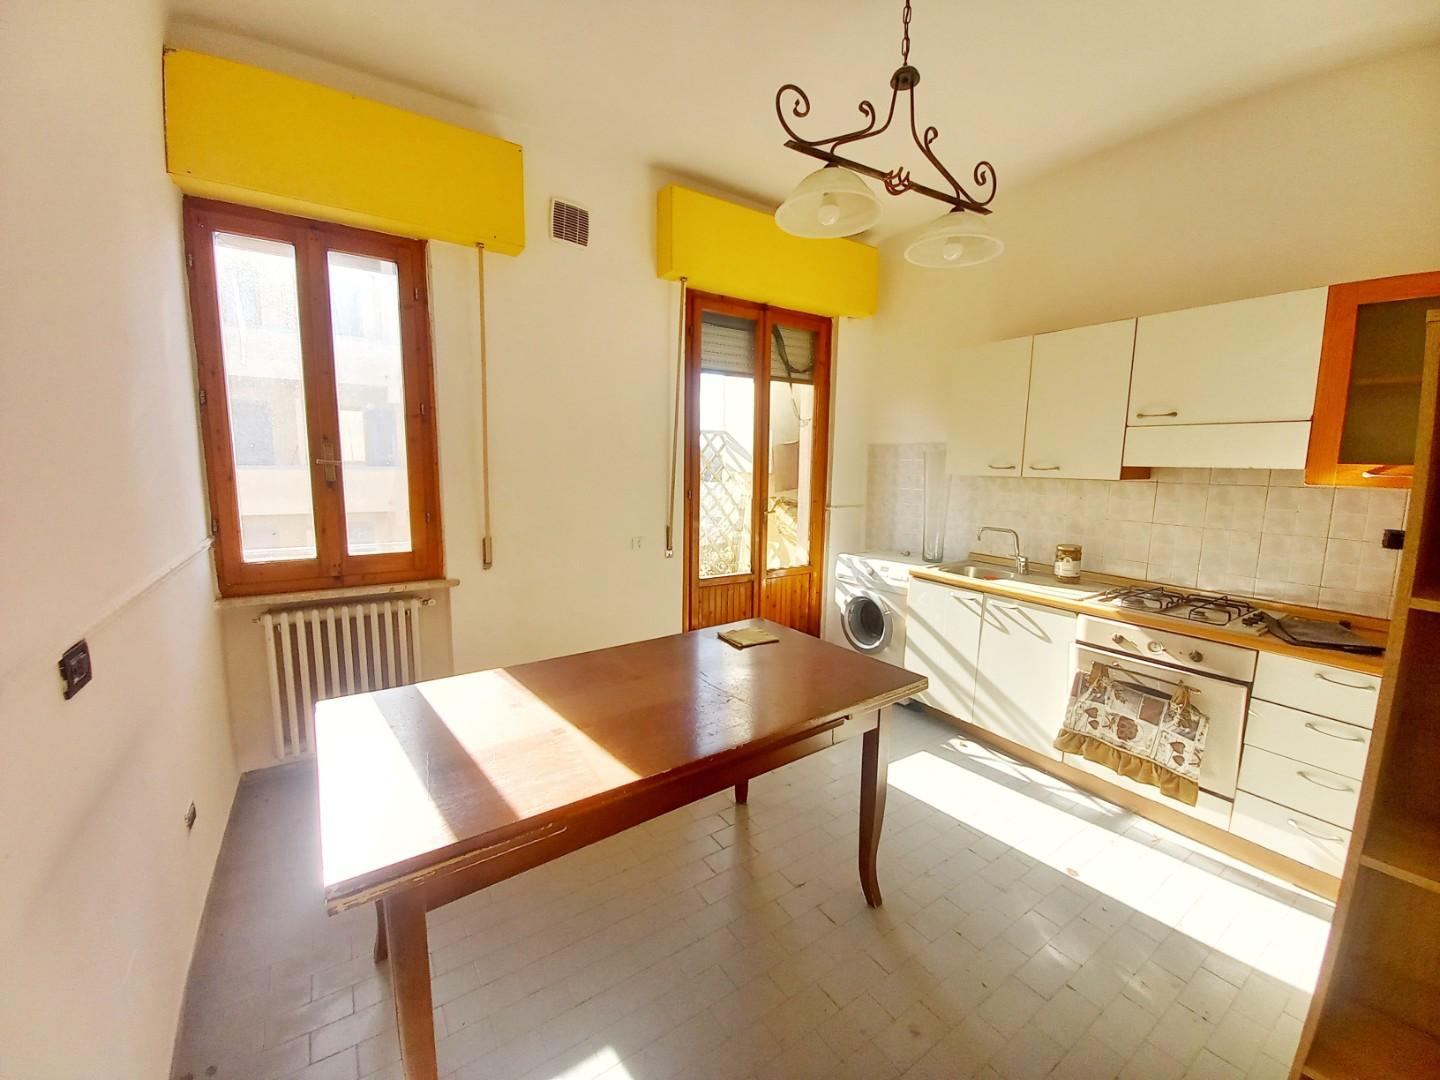 Appartamento in vendita a Castelfiorentino, 3 locali, prezzo € 80.000 | PortaleAgenzieImmobiliari.it